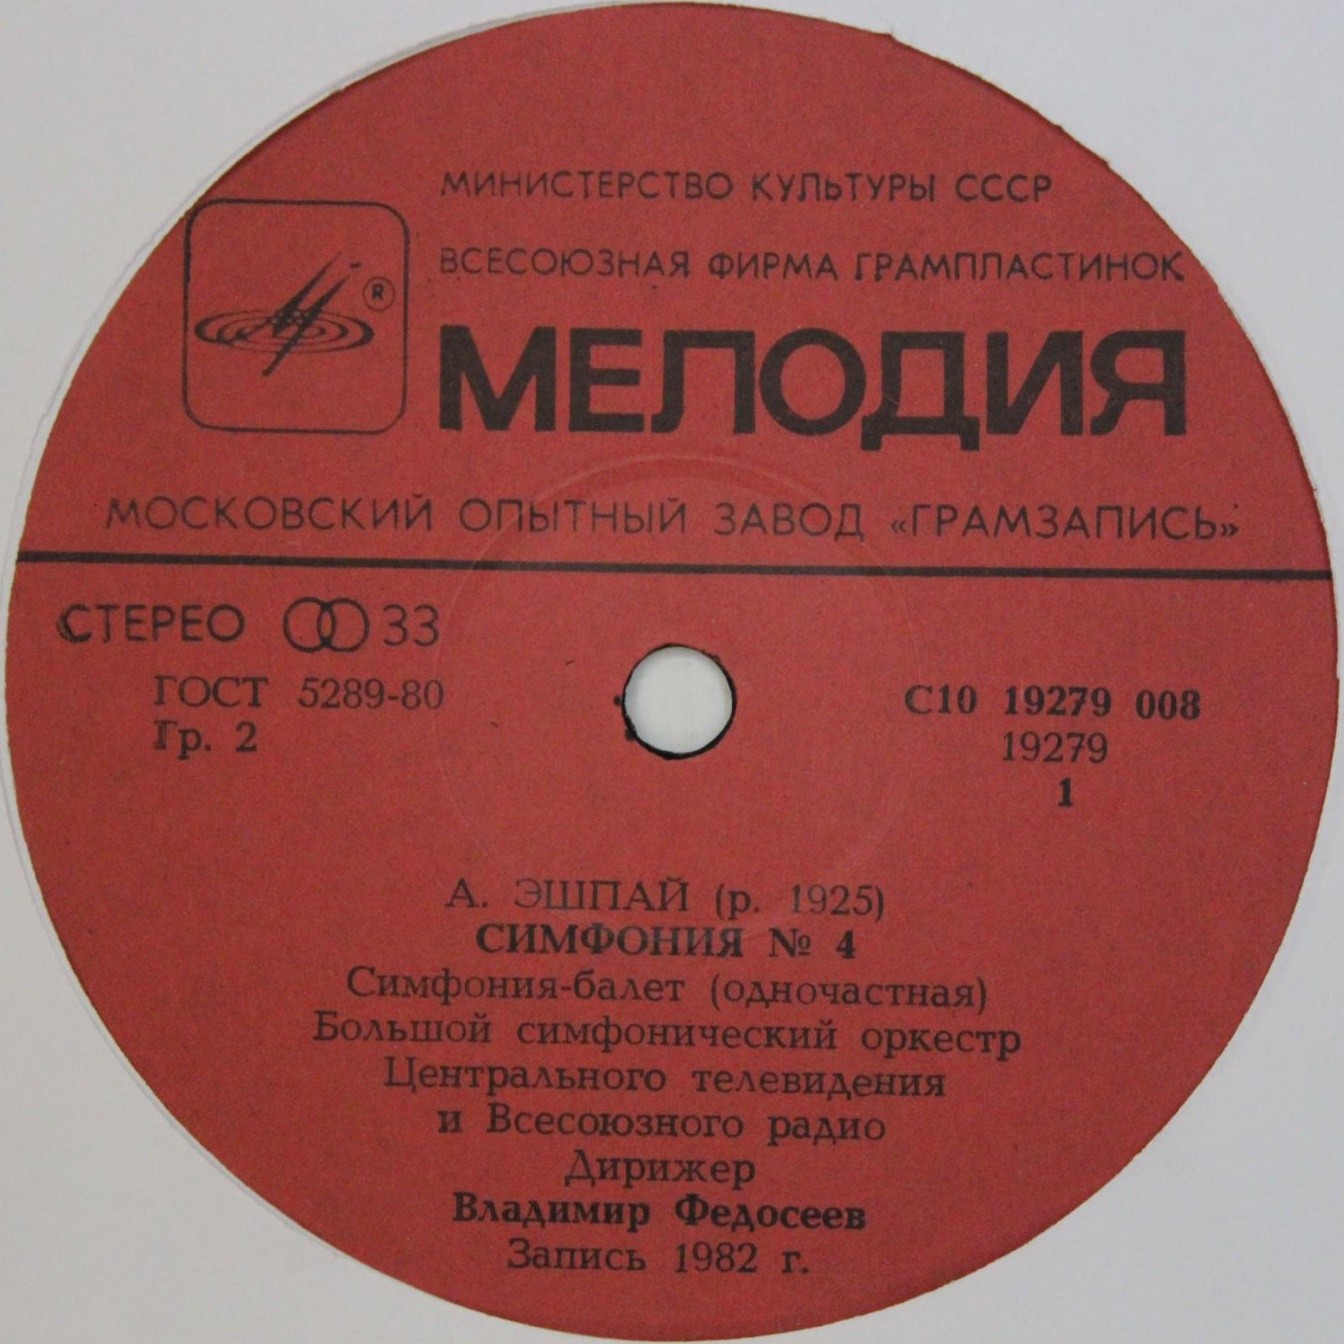 А. ЭШПАЙ (1925): Симфония № 4 (Симфония-балет).